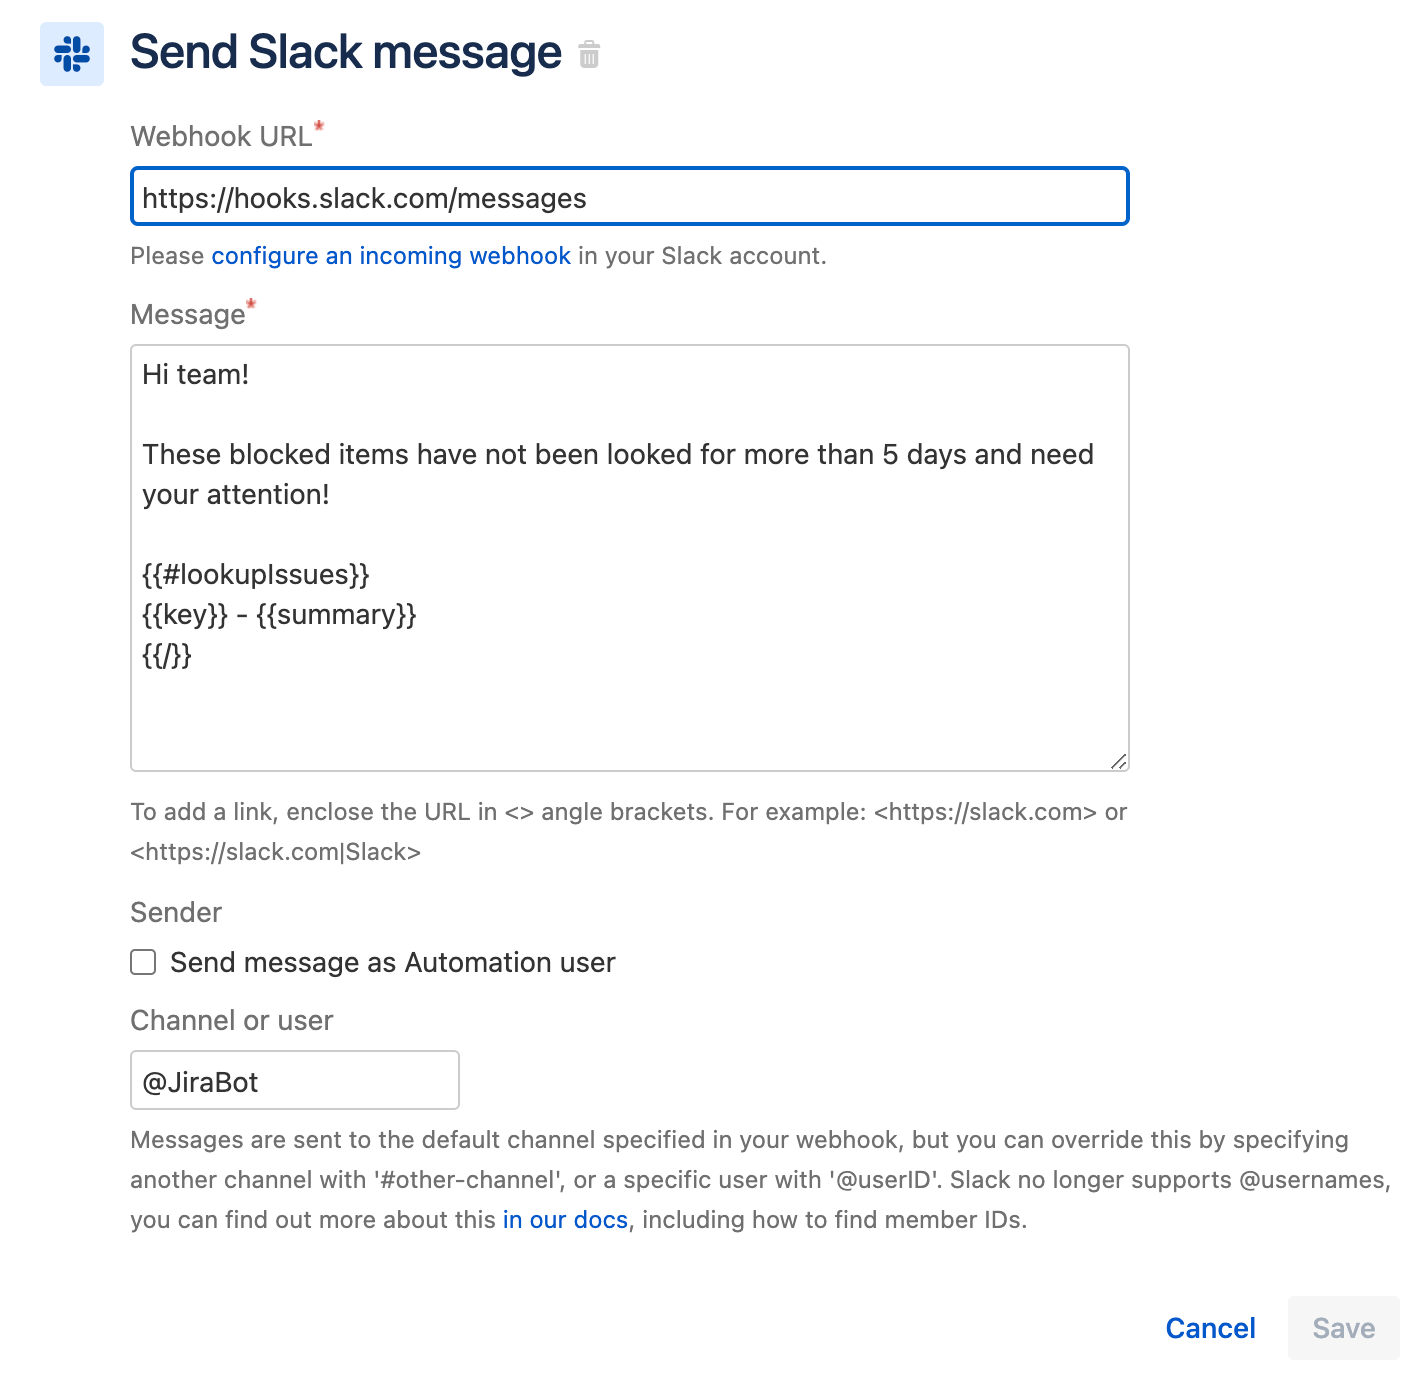 Send Slack message